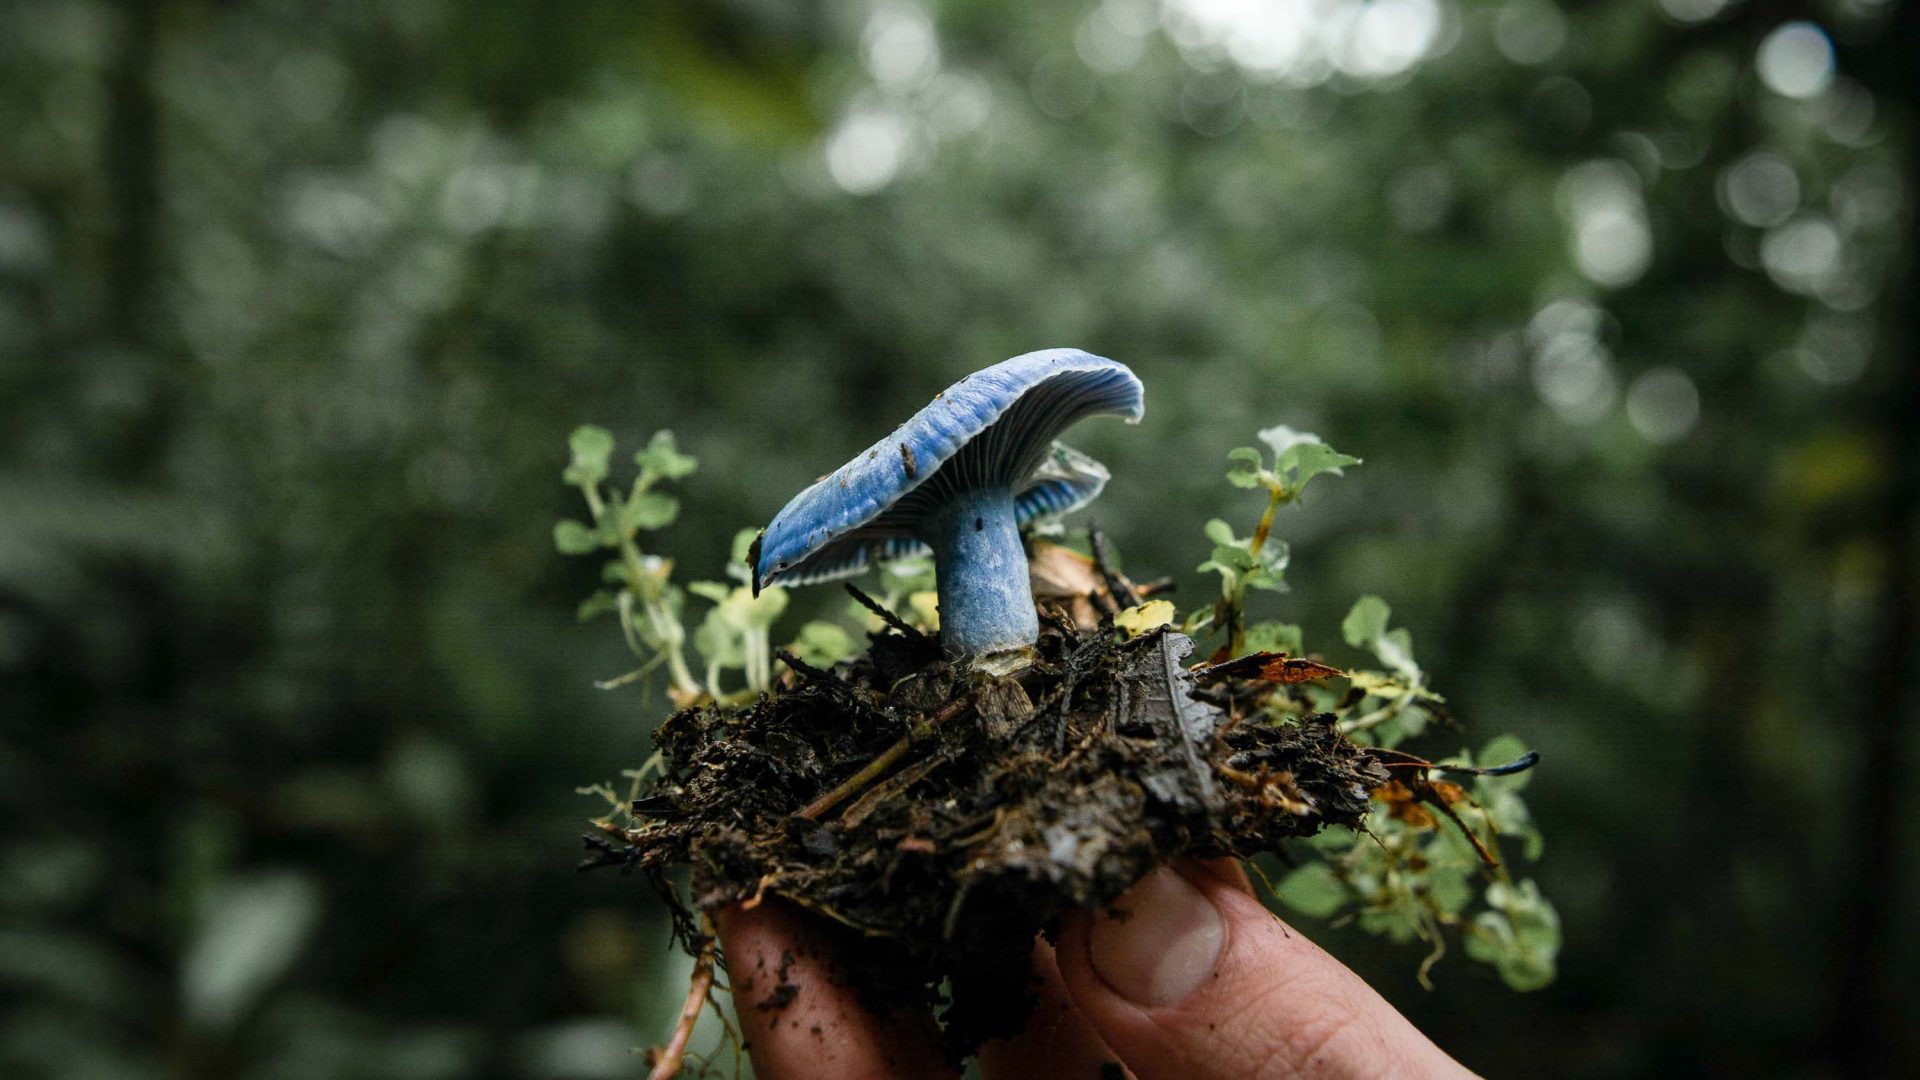 A hand holds a blue mushroom.